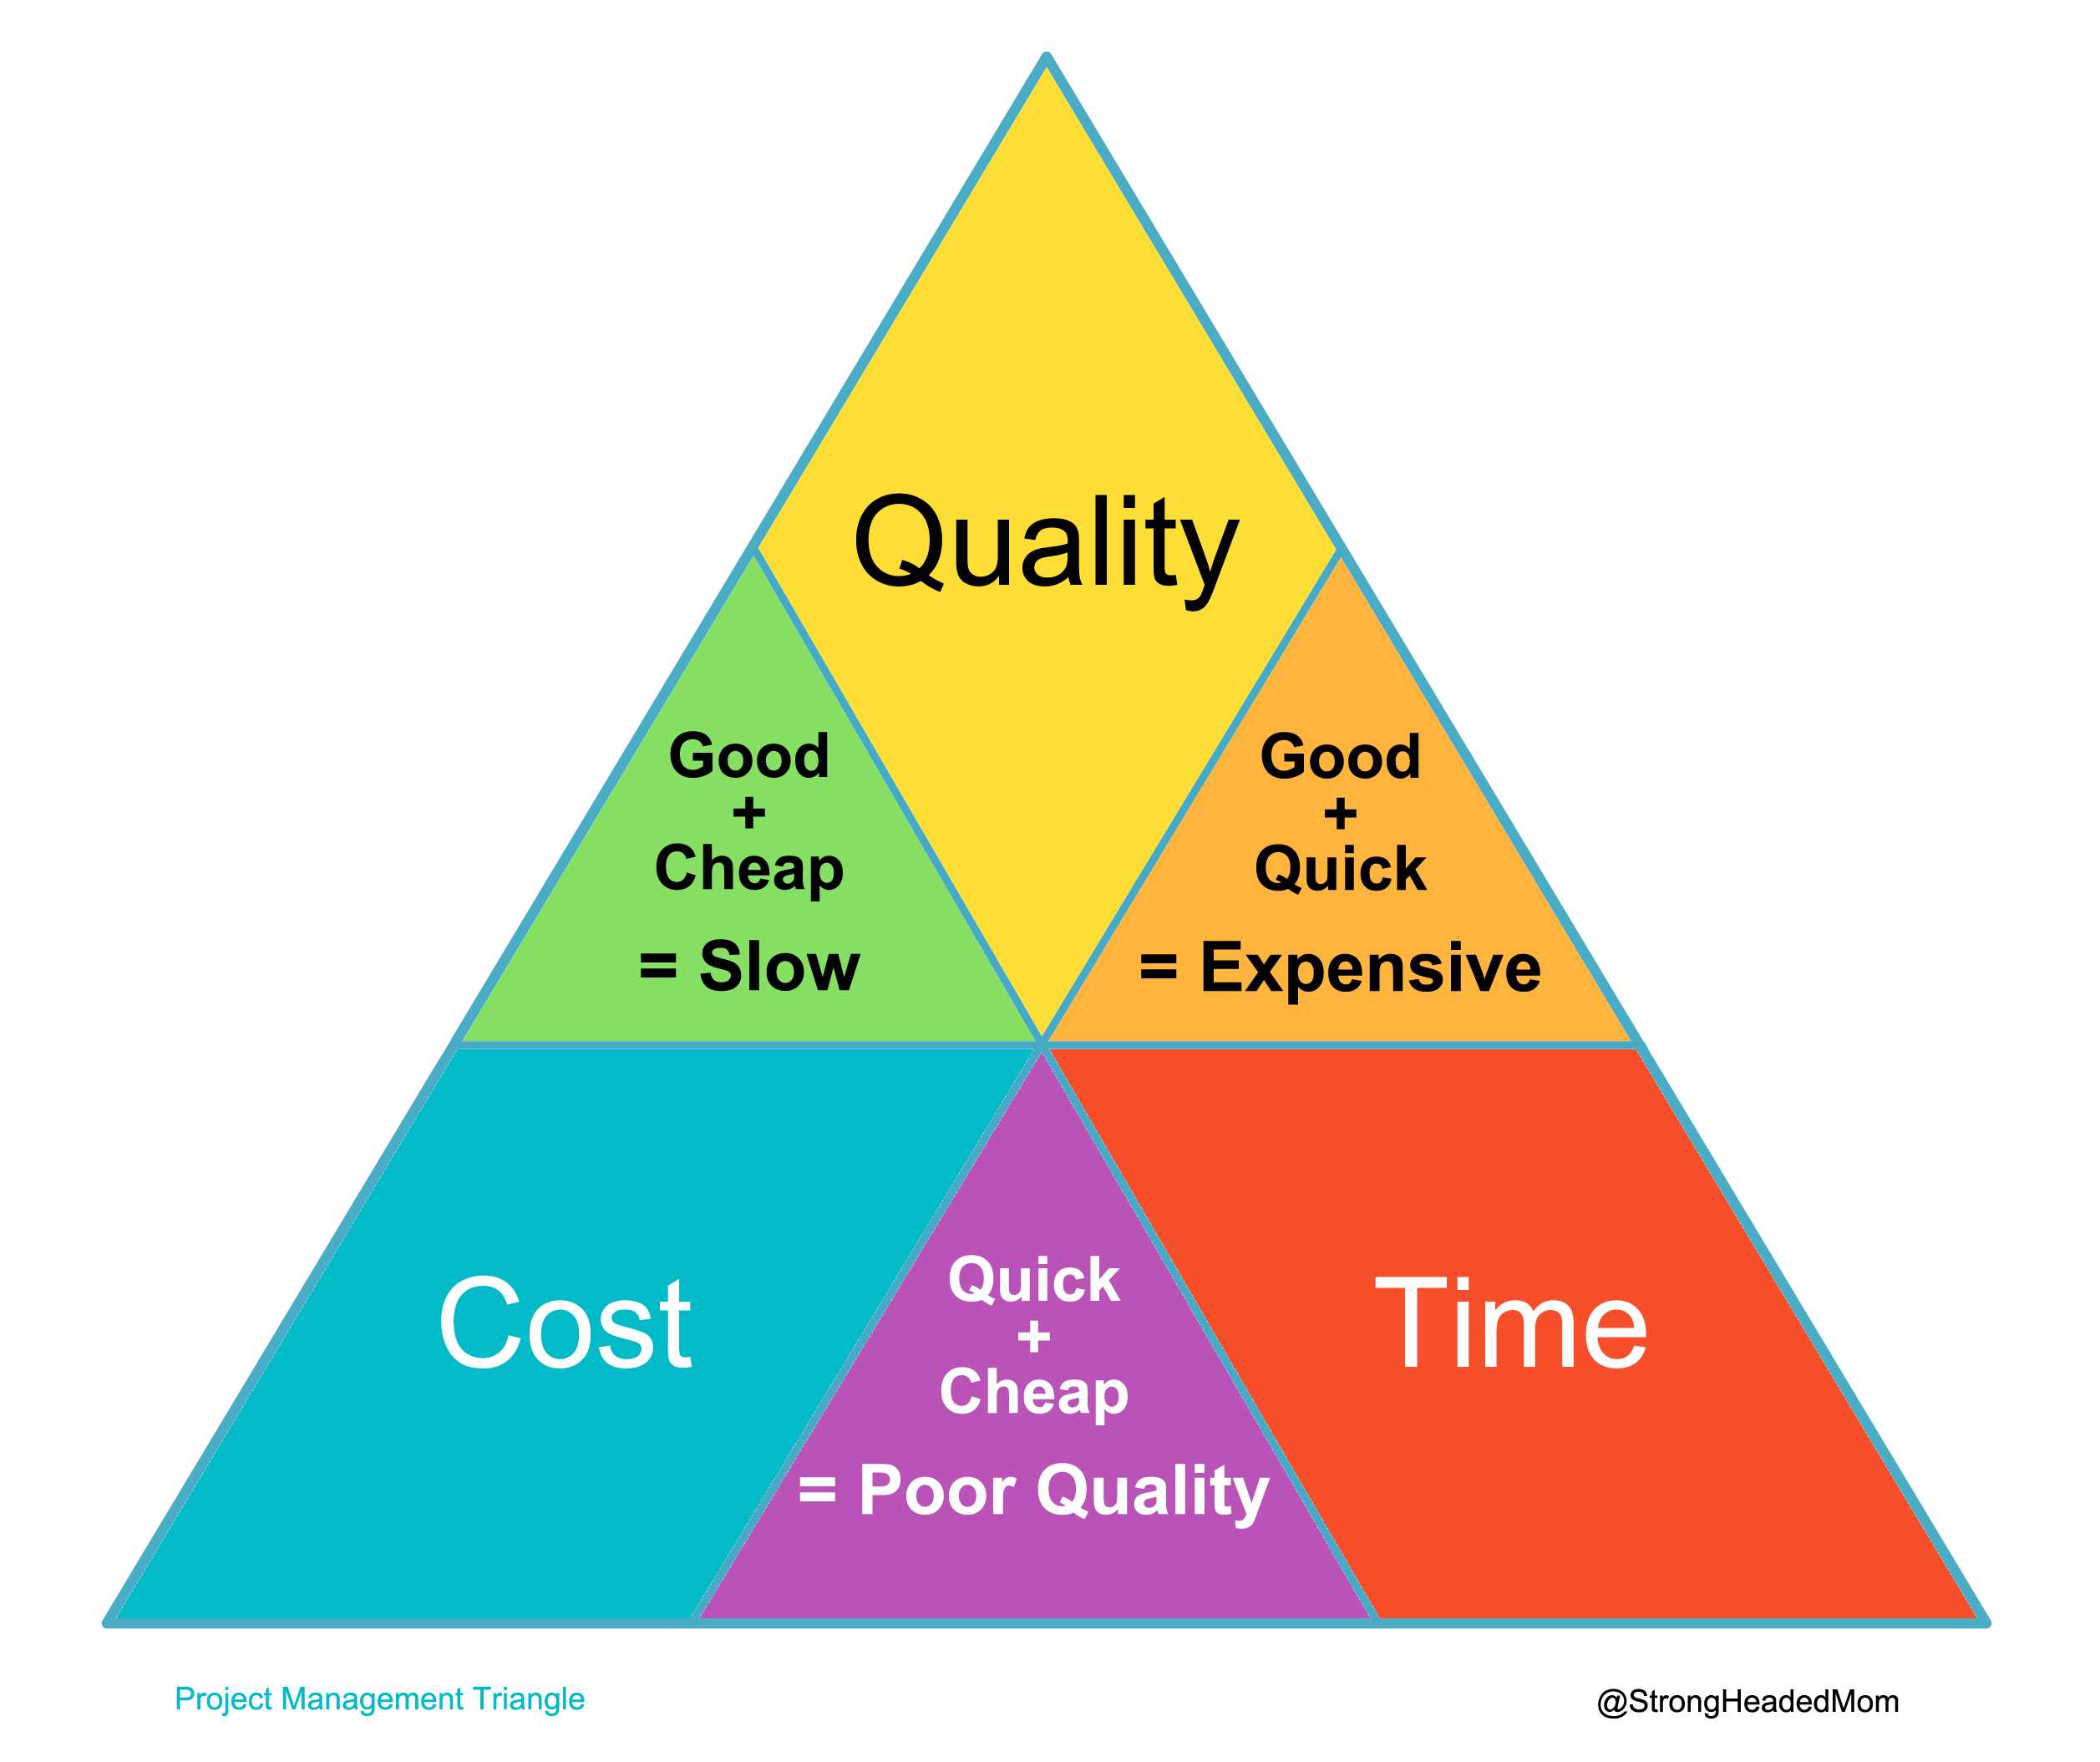 做项目管理的都知道项目管理三角形(project management triangle)